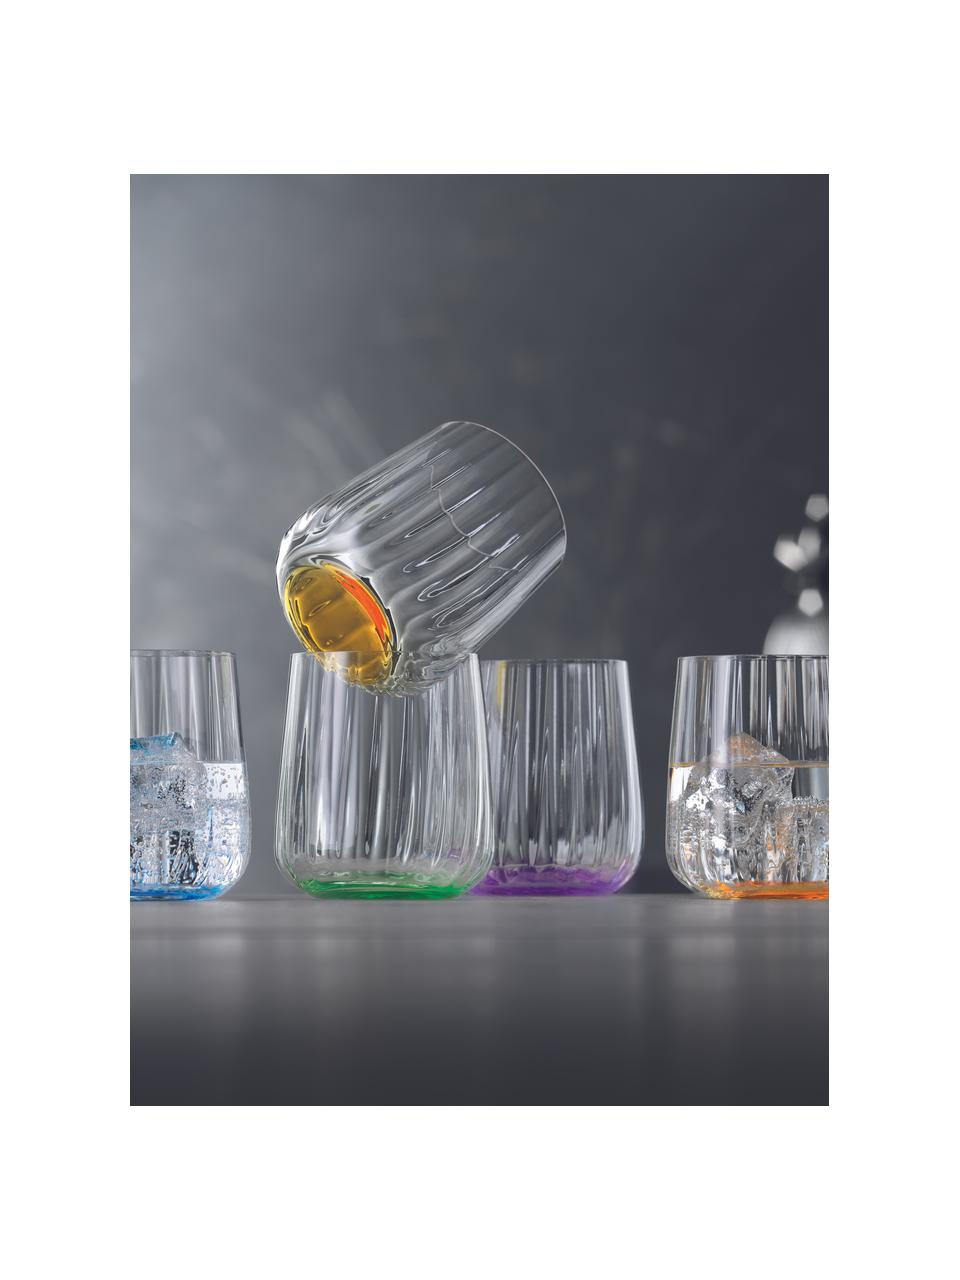 Kristall-Gläser Lifestyle, 2 Stück, Kristallglas, Grün, Ø 8 x H 9 cm, 340 ml